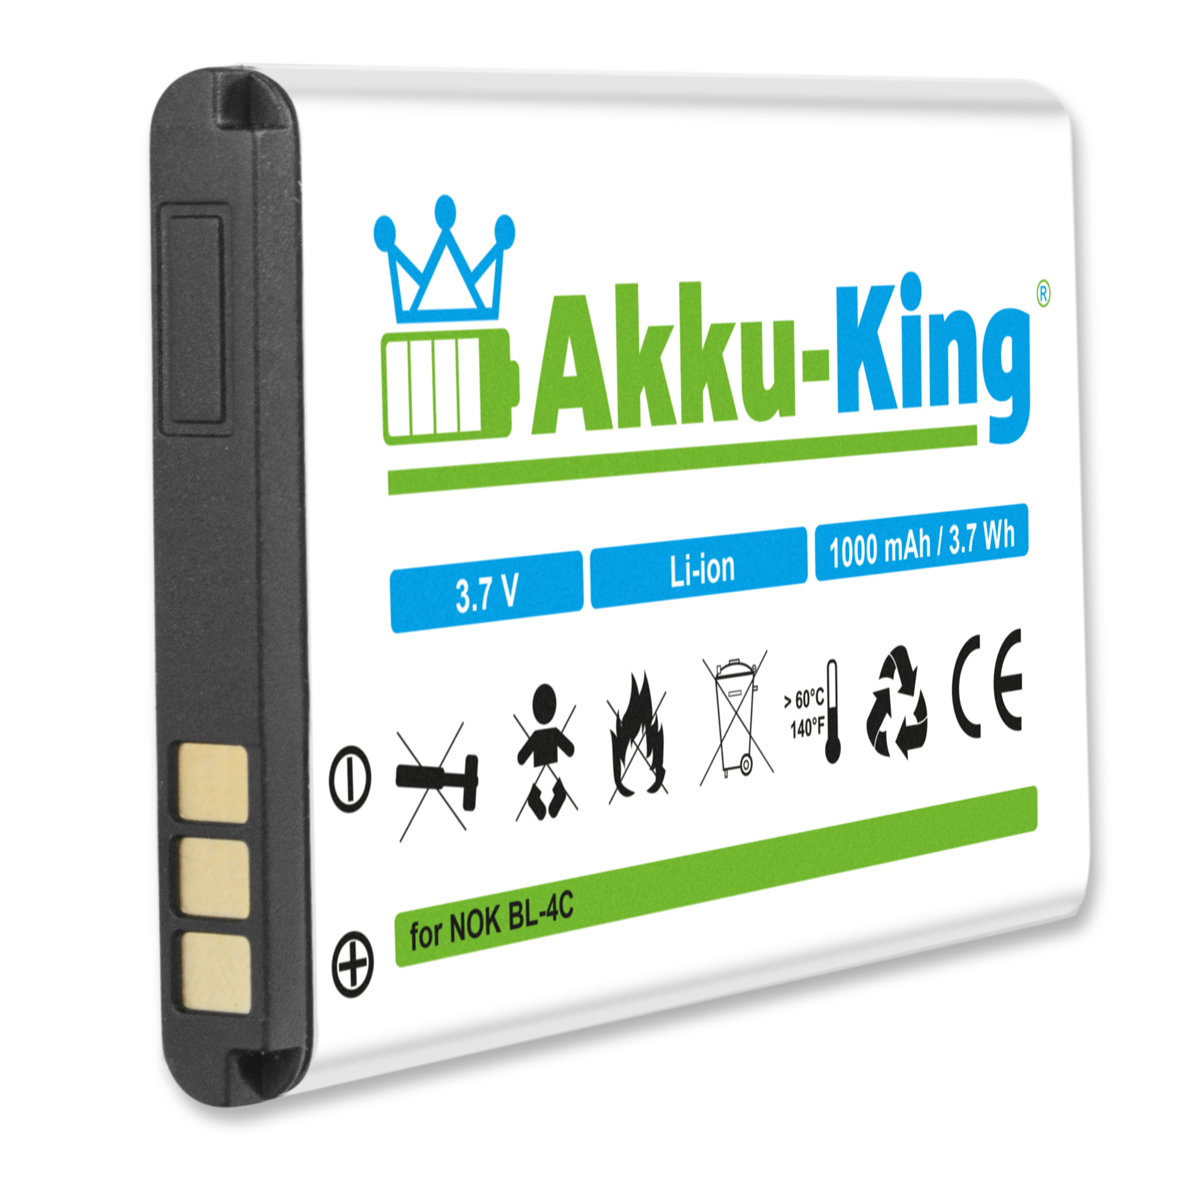 Handy-Akku, 3.7 Doro AKKU-KING Akku mit Volt, 1000mAh kompatibel Li-Ion XYP1110007704